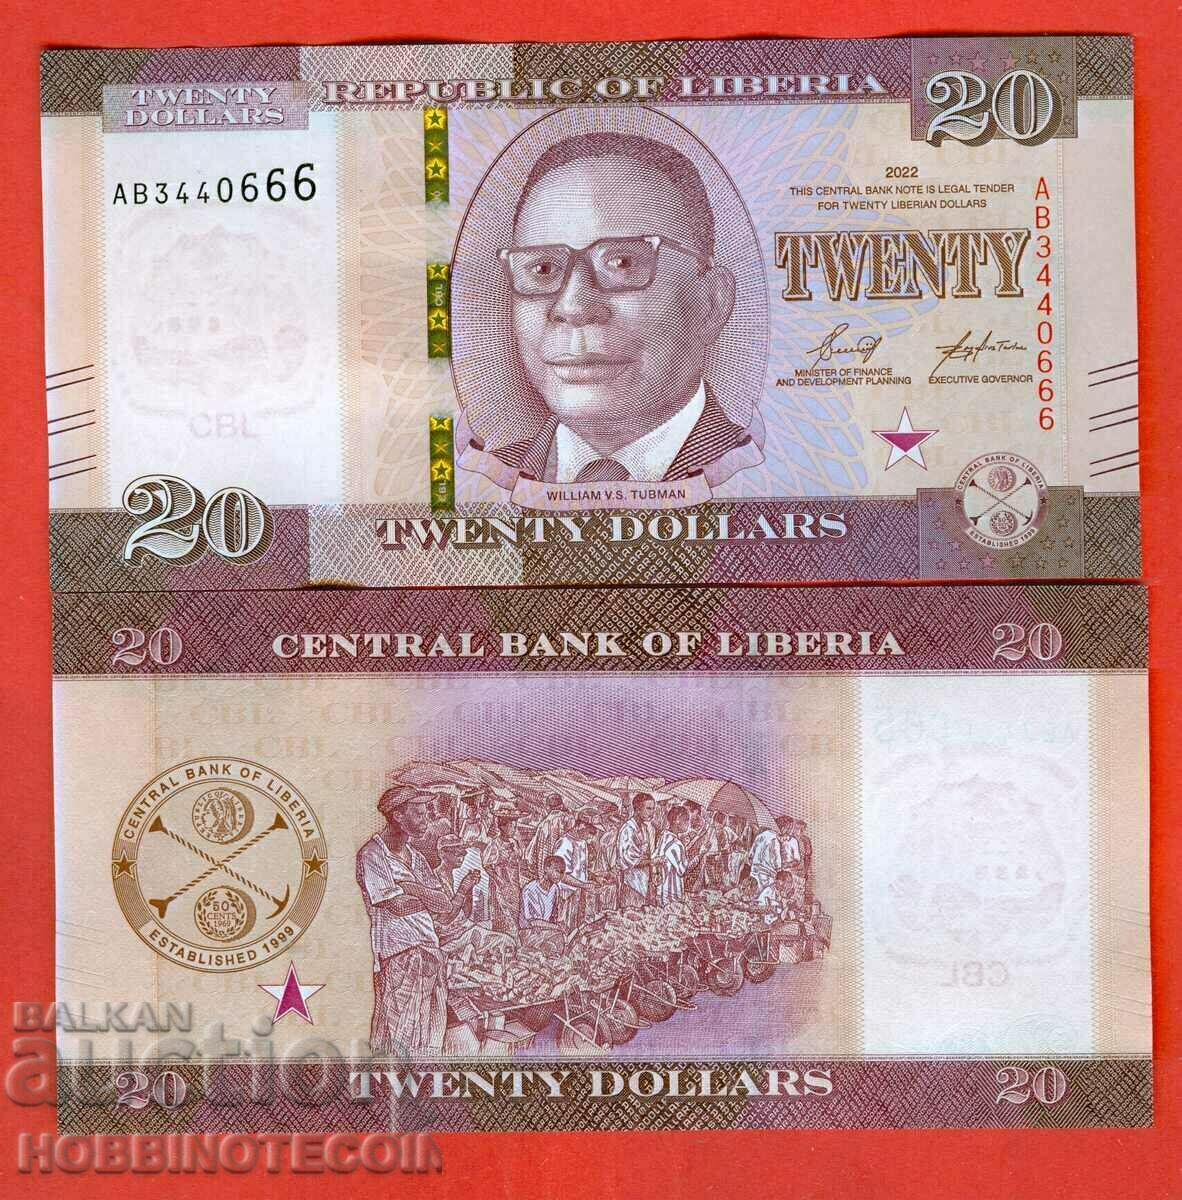 LIBERIA LIBERIA $20 issue issue 2022 NEW UNC